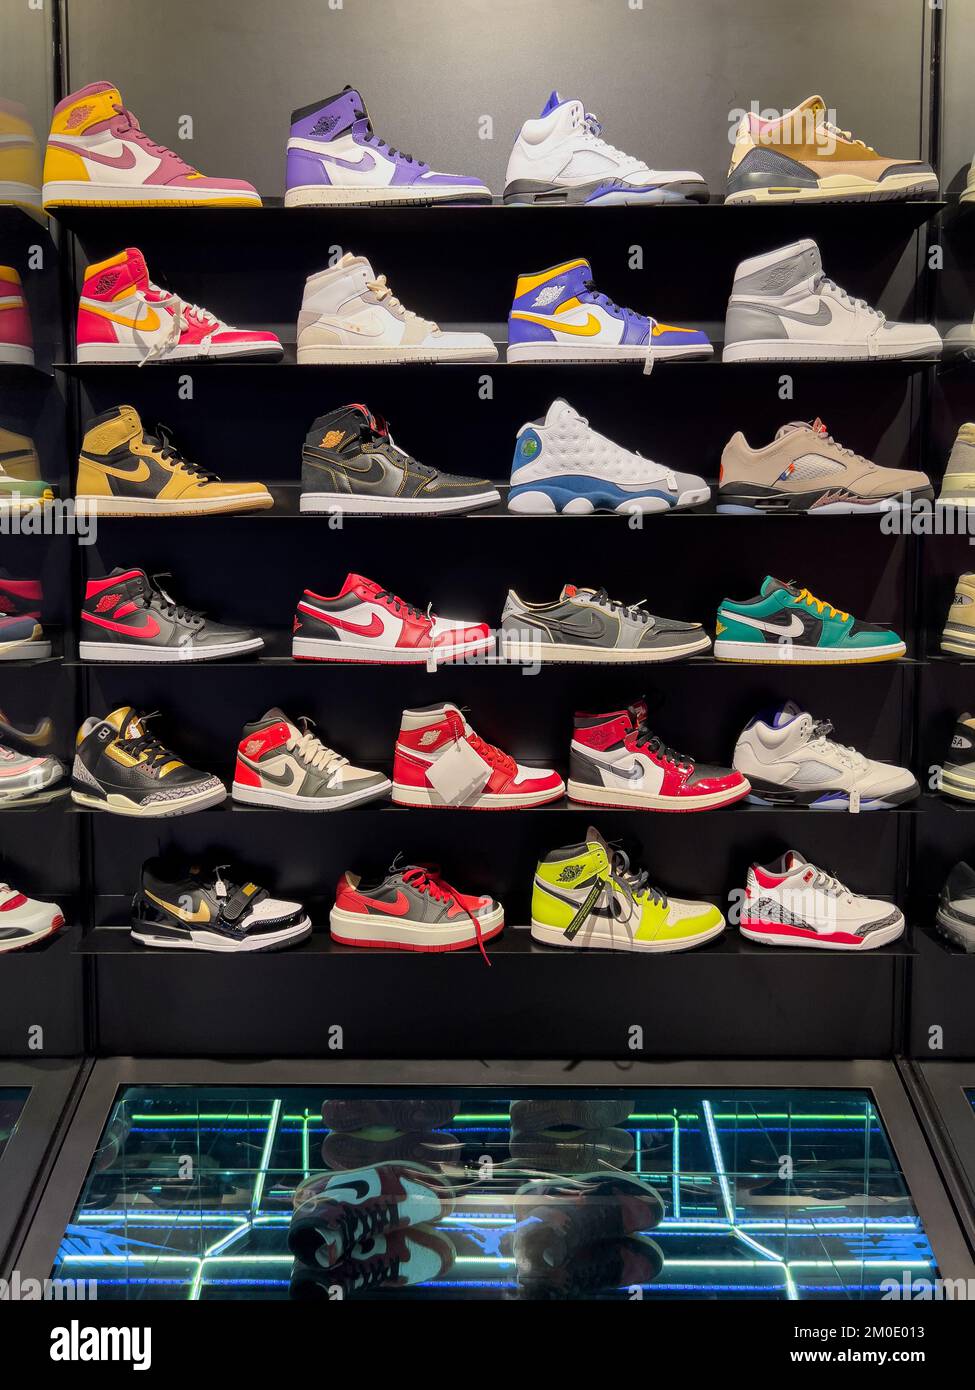 Nike Schuhe wie der Air Jordan 1 und der Jordan 1 Low On Shelf bieten  Kunden die Möglichkeit, die Farben auszuwählen, die sie mögen  Stockfotografie - Alamy